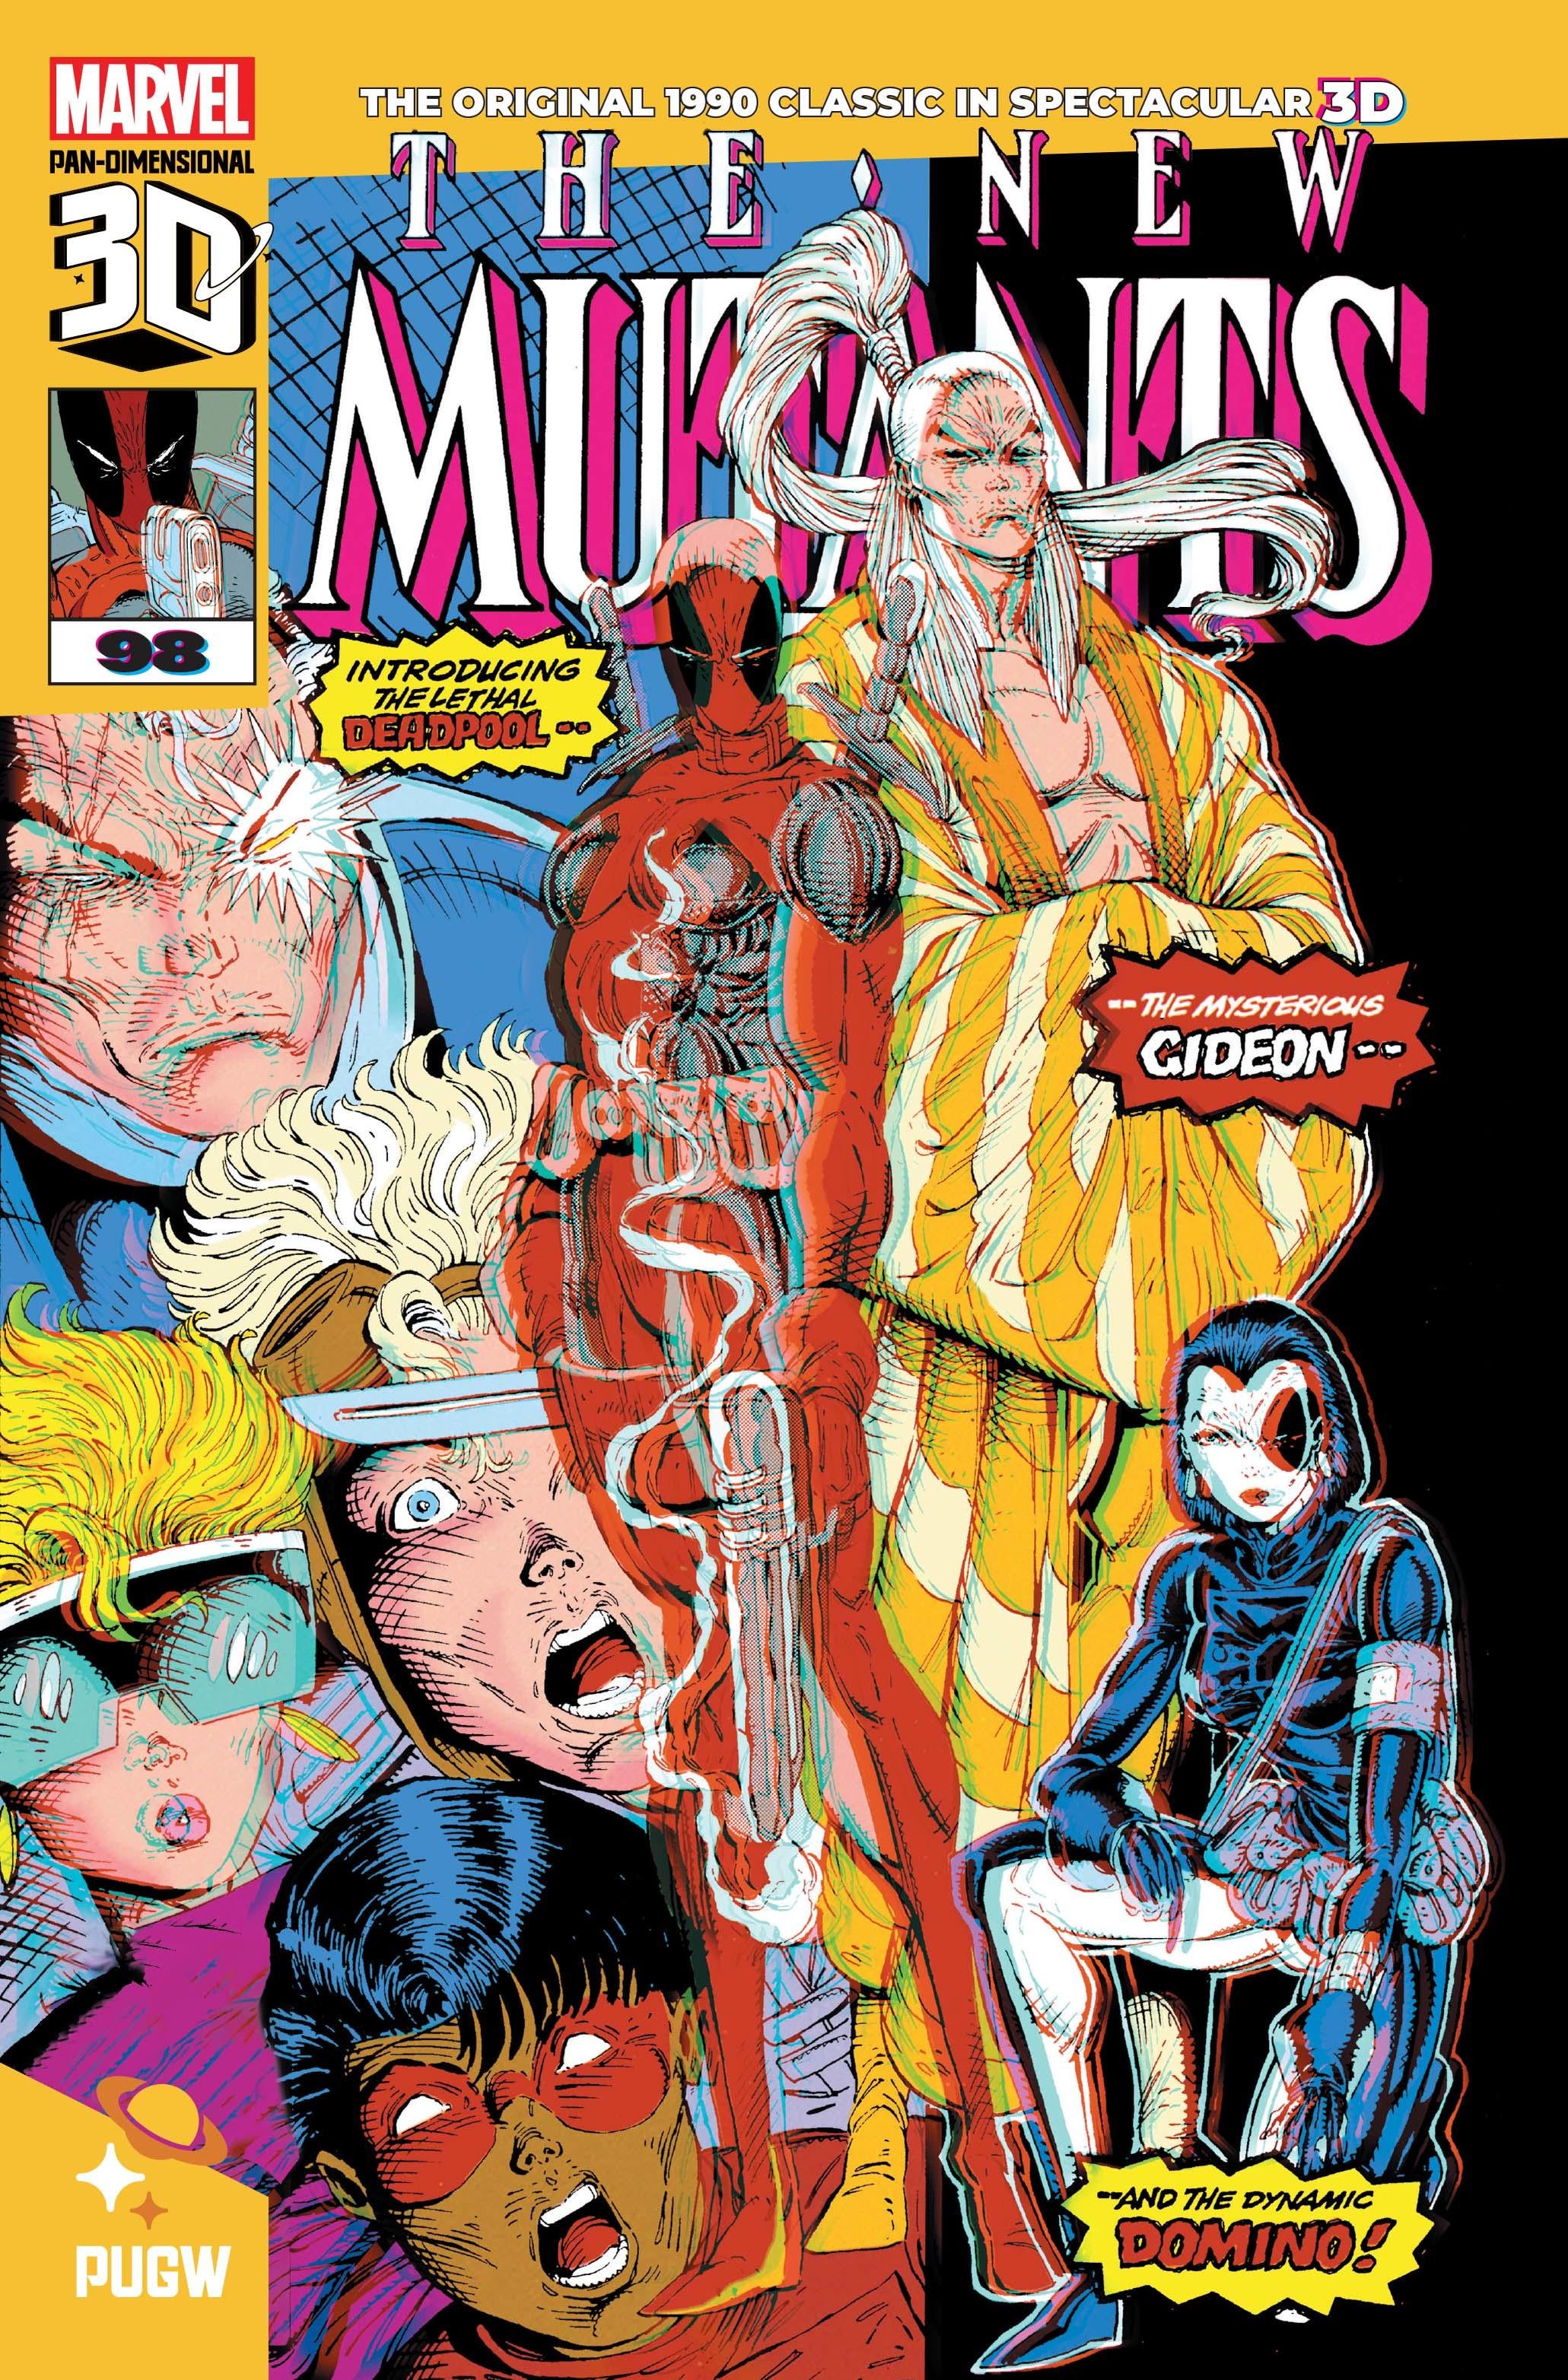 deadpool-new-mutants-3d-marvel-cover.jpg